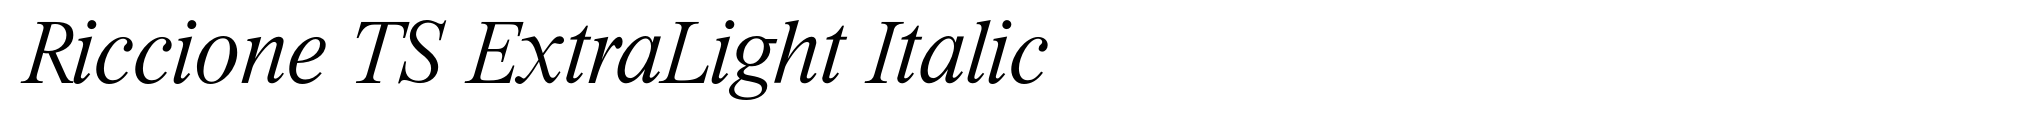 Riccione TS ExtraLight Italic image